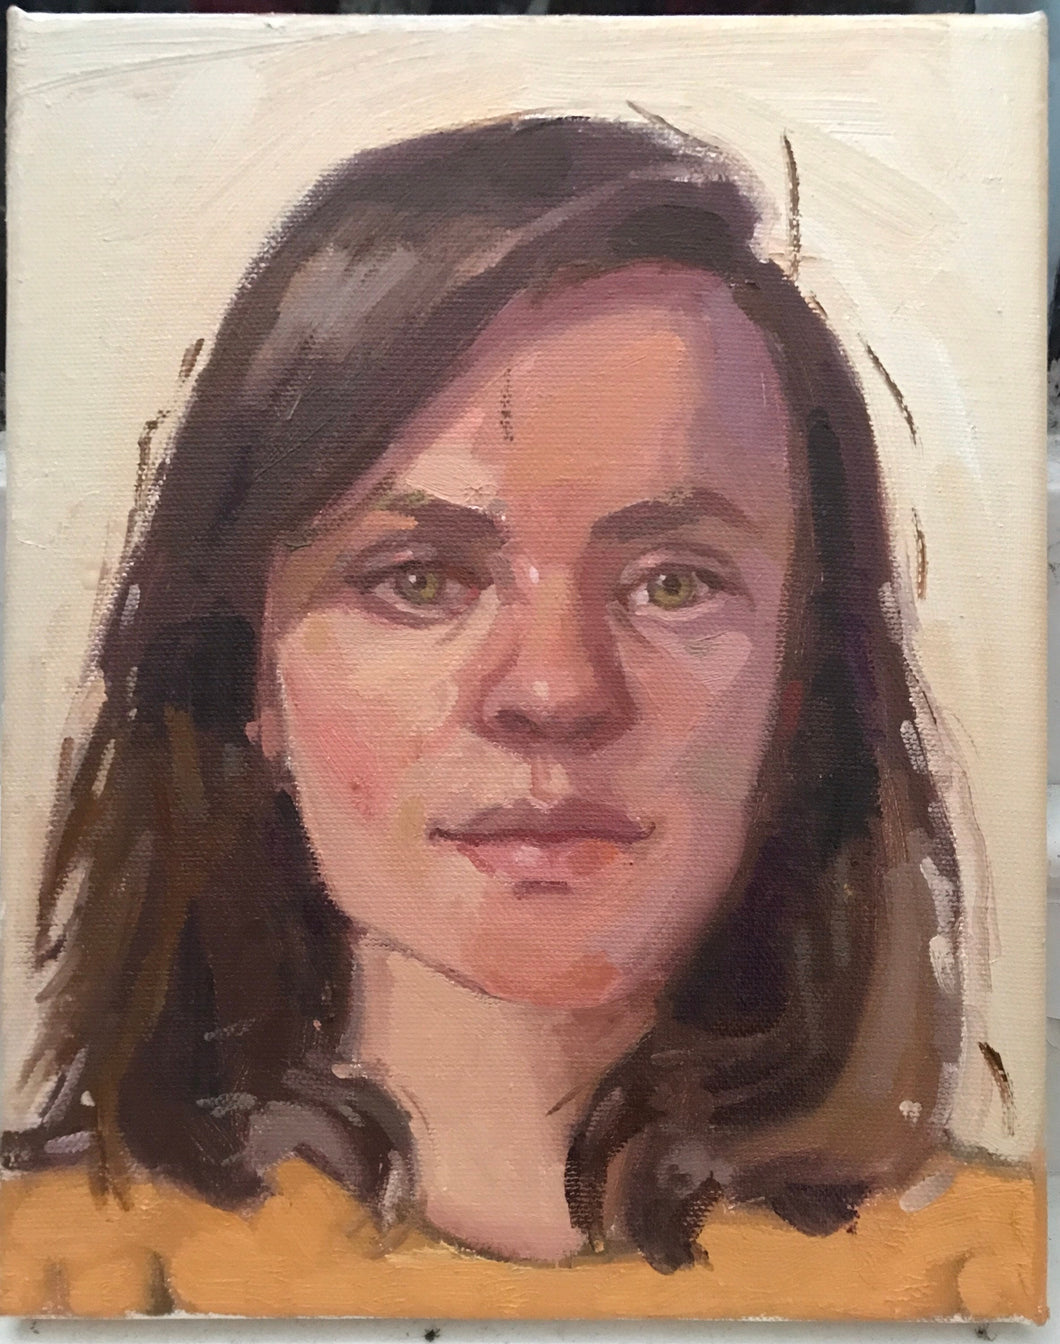 Allaprima portrait painting oil on canvas female portrait figurative art woman face